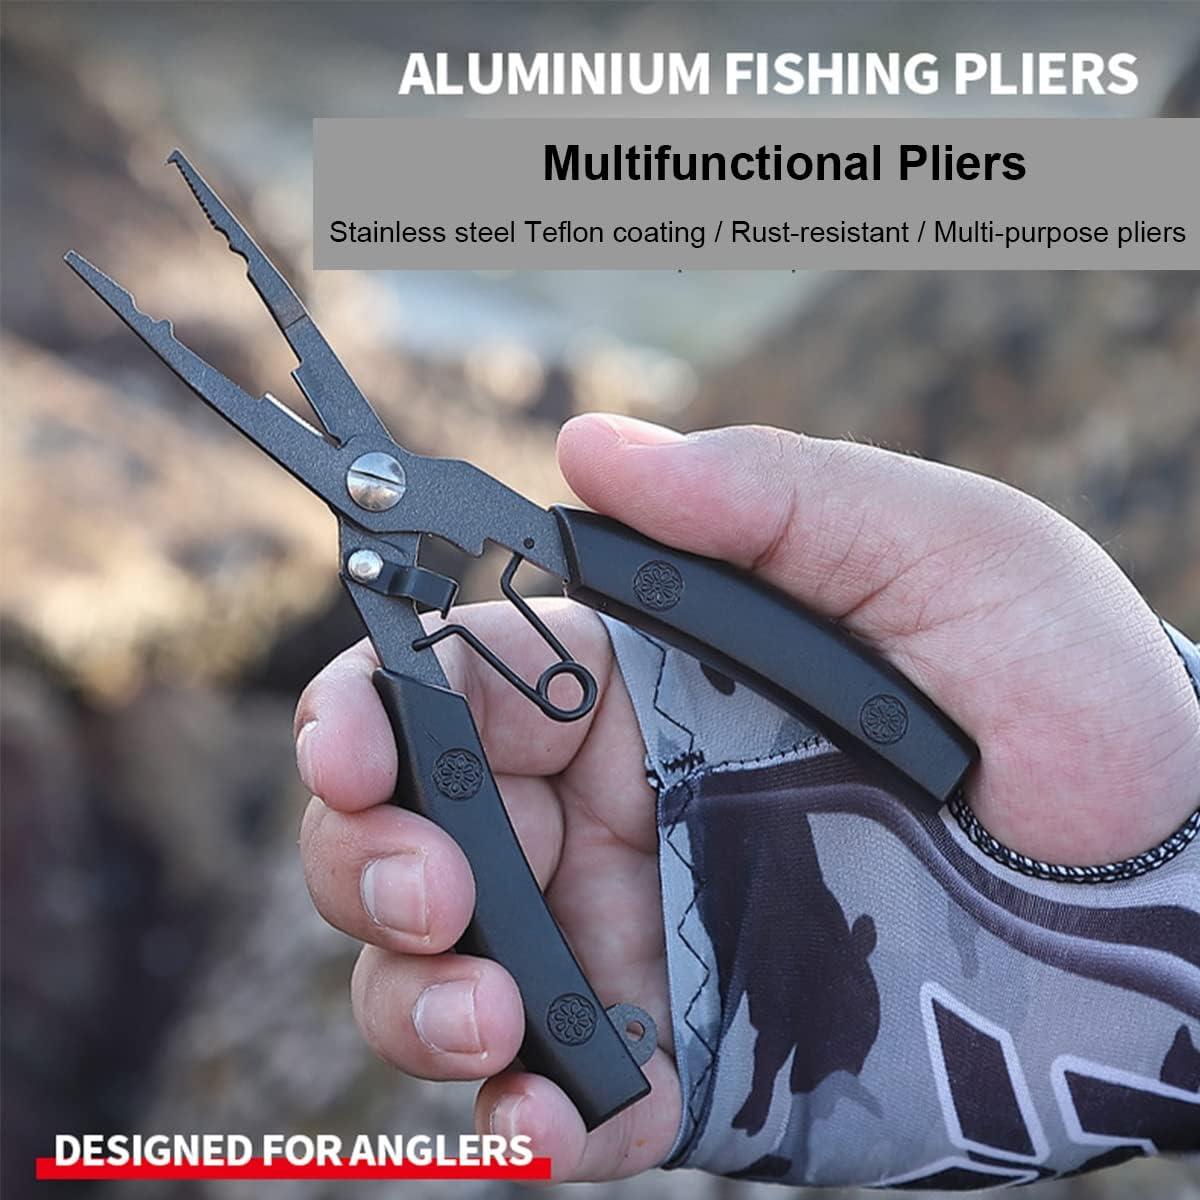 Pliers For Fishing Australia, Fishing Scissors